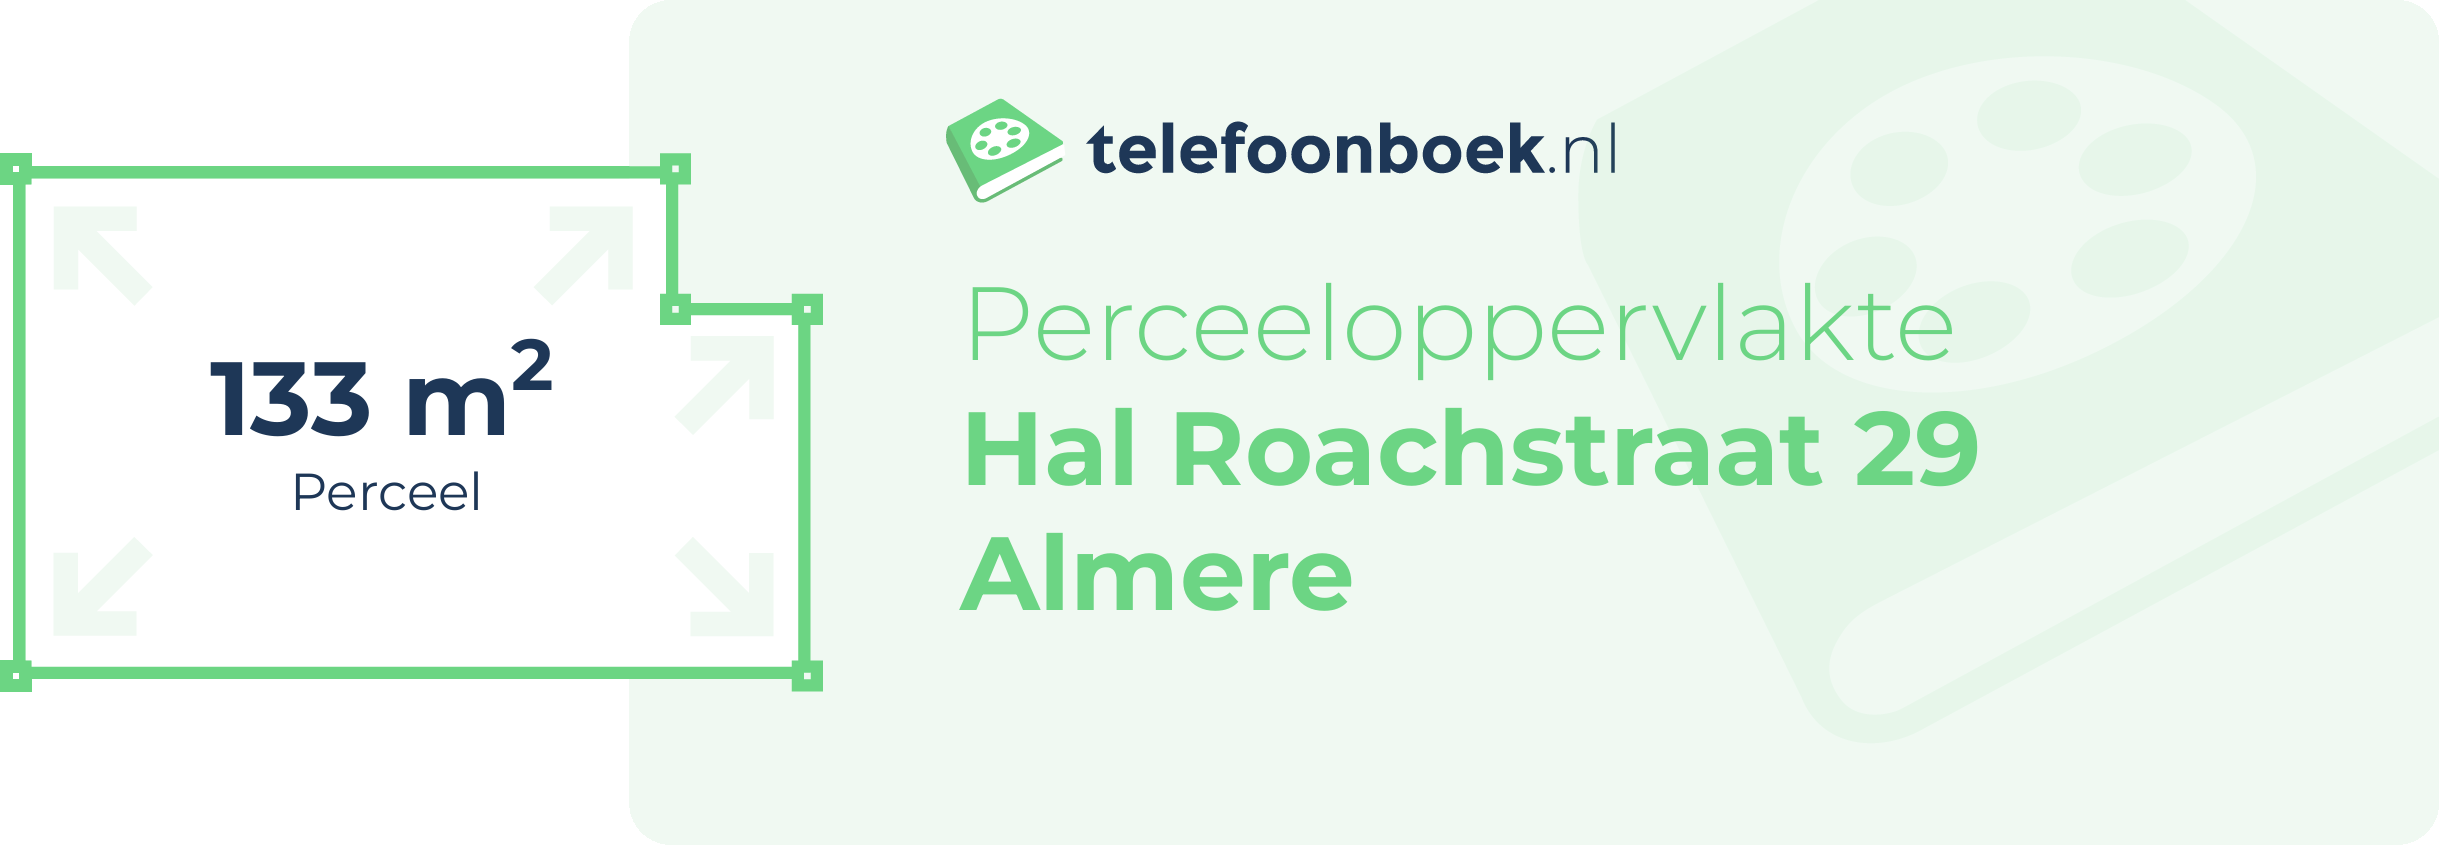 Perceeloppervlakte Hal Roachstraat 29 Almere